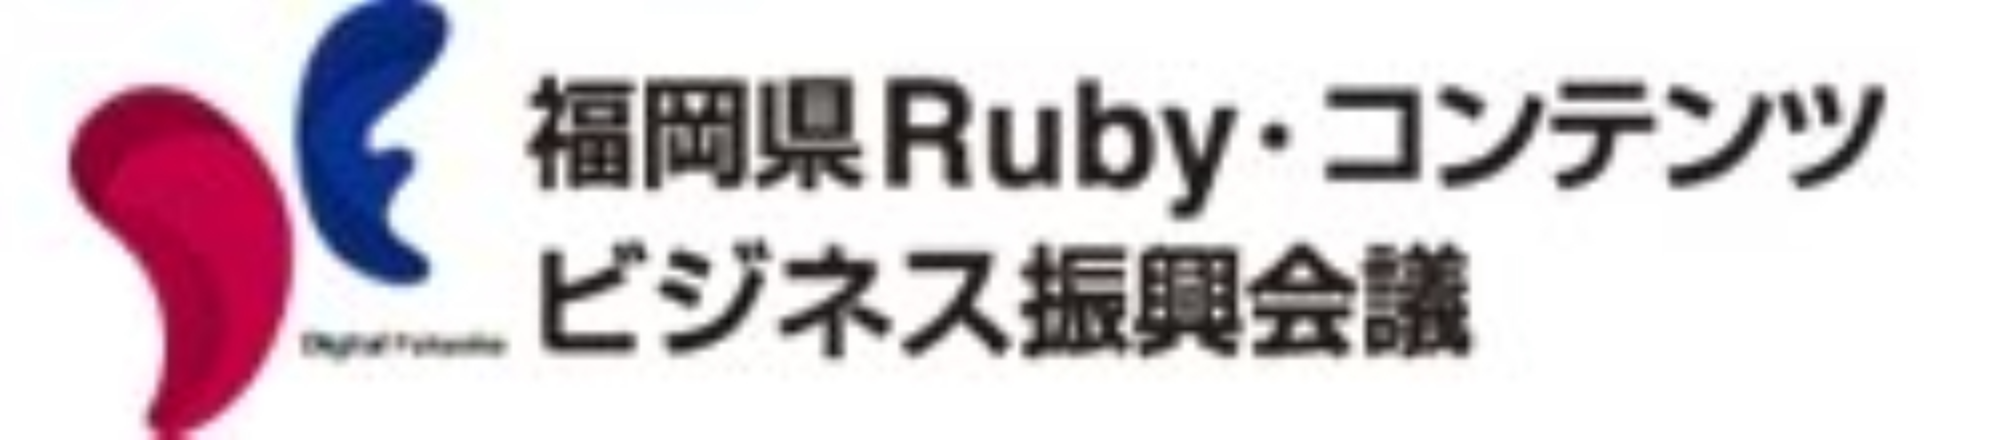 福岡県Ruby・コンテンツビジネス振興会議